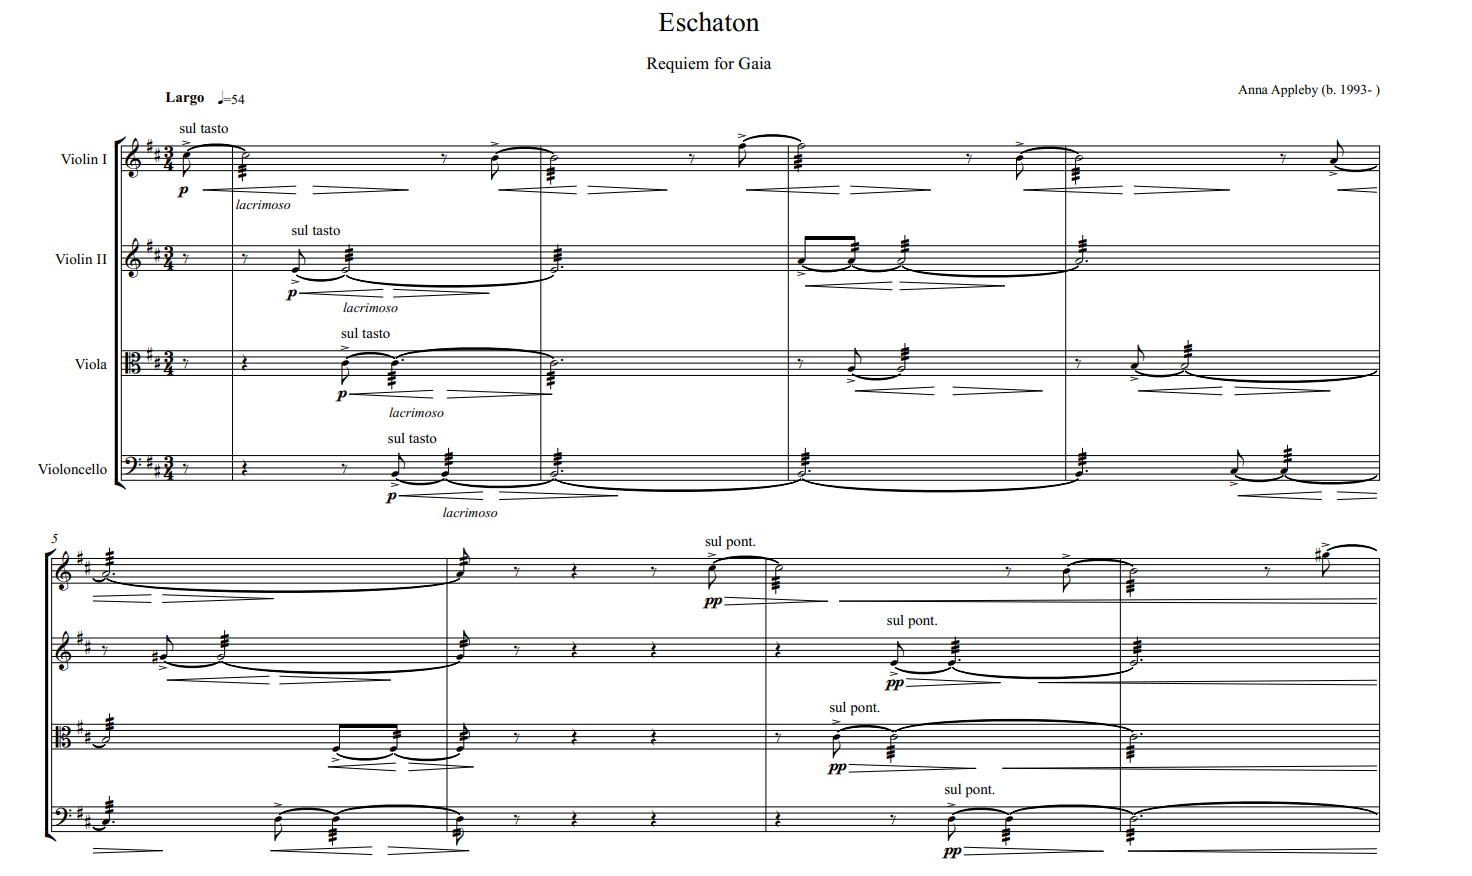 Eschaton: String Quartet No. 1